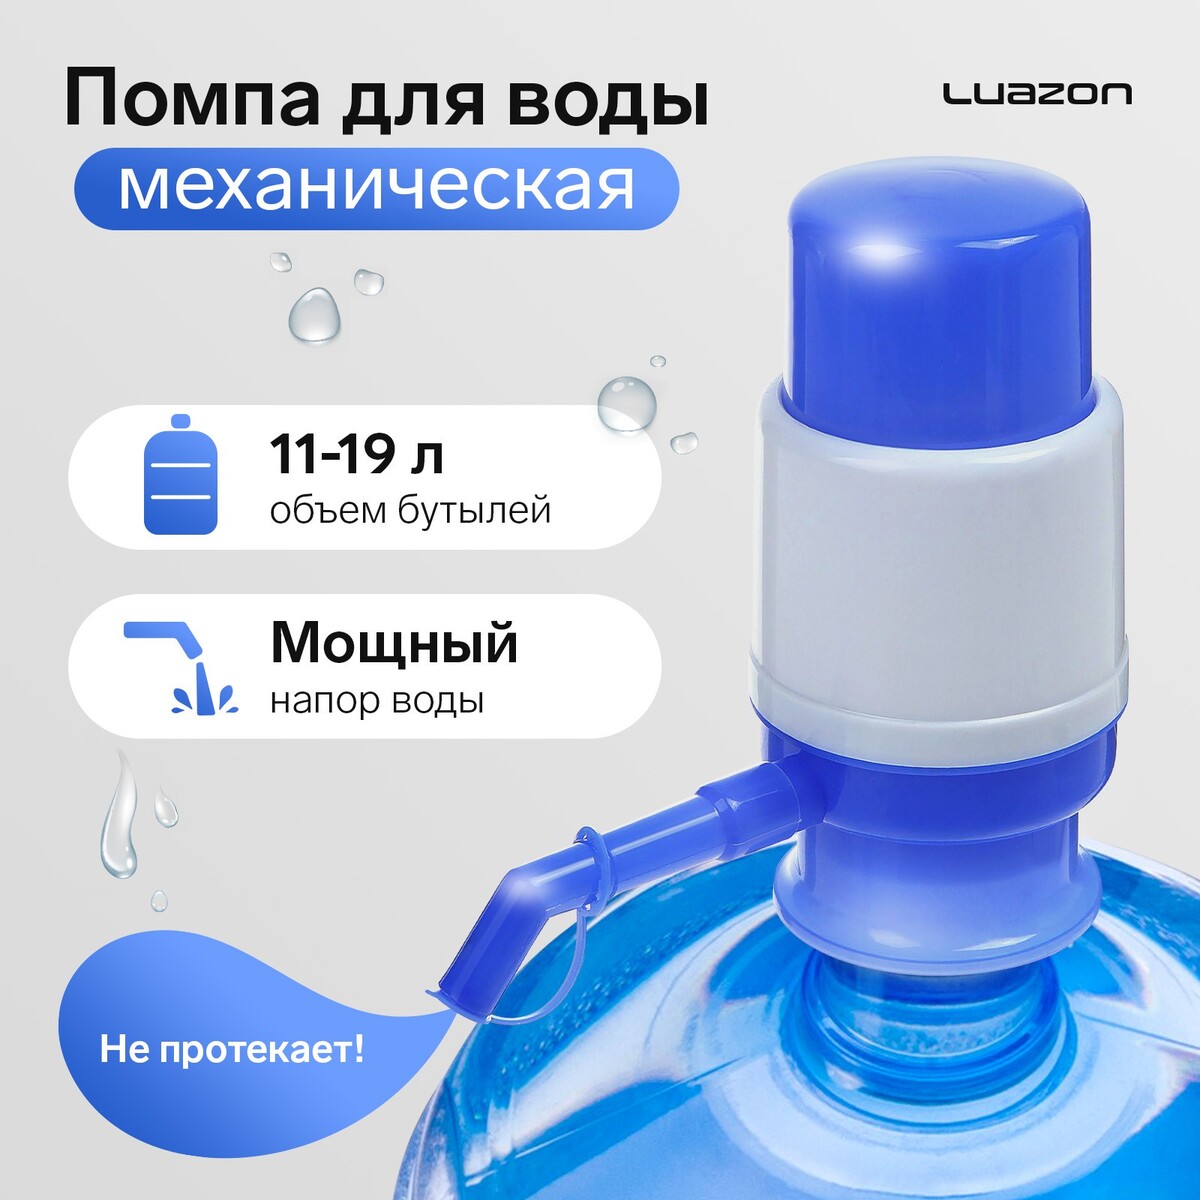 Помпа для воды luazon, механическая, малая, под бутыль от 11 до 19 л, голубая помпа механическая для бутилированной воды masterprof 130916